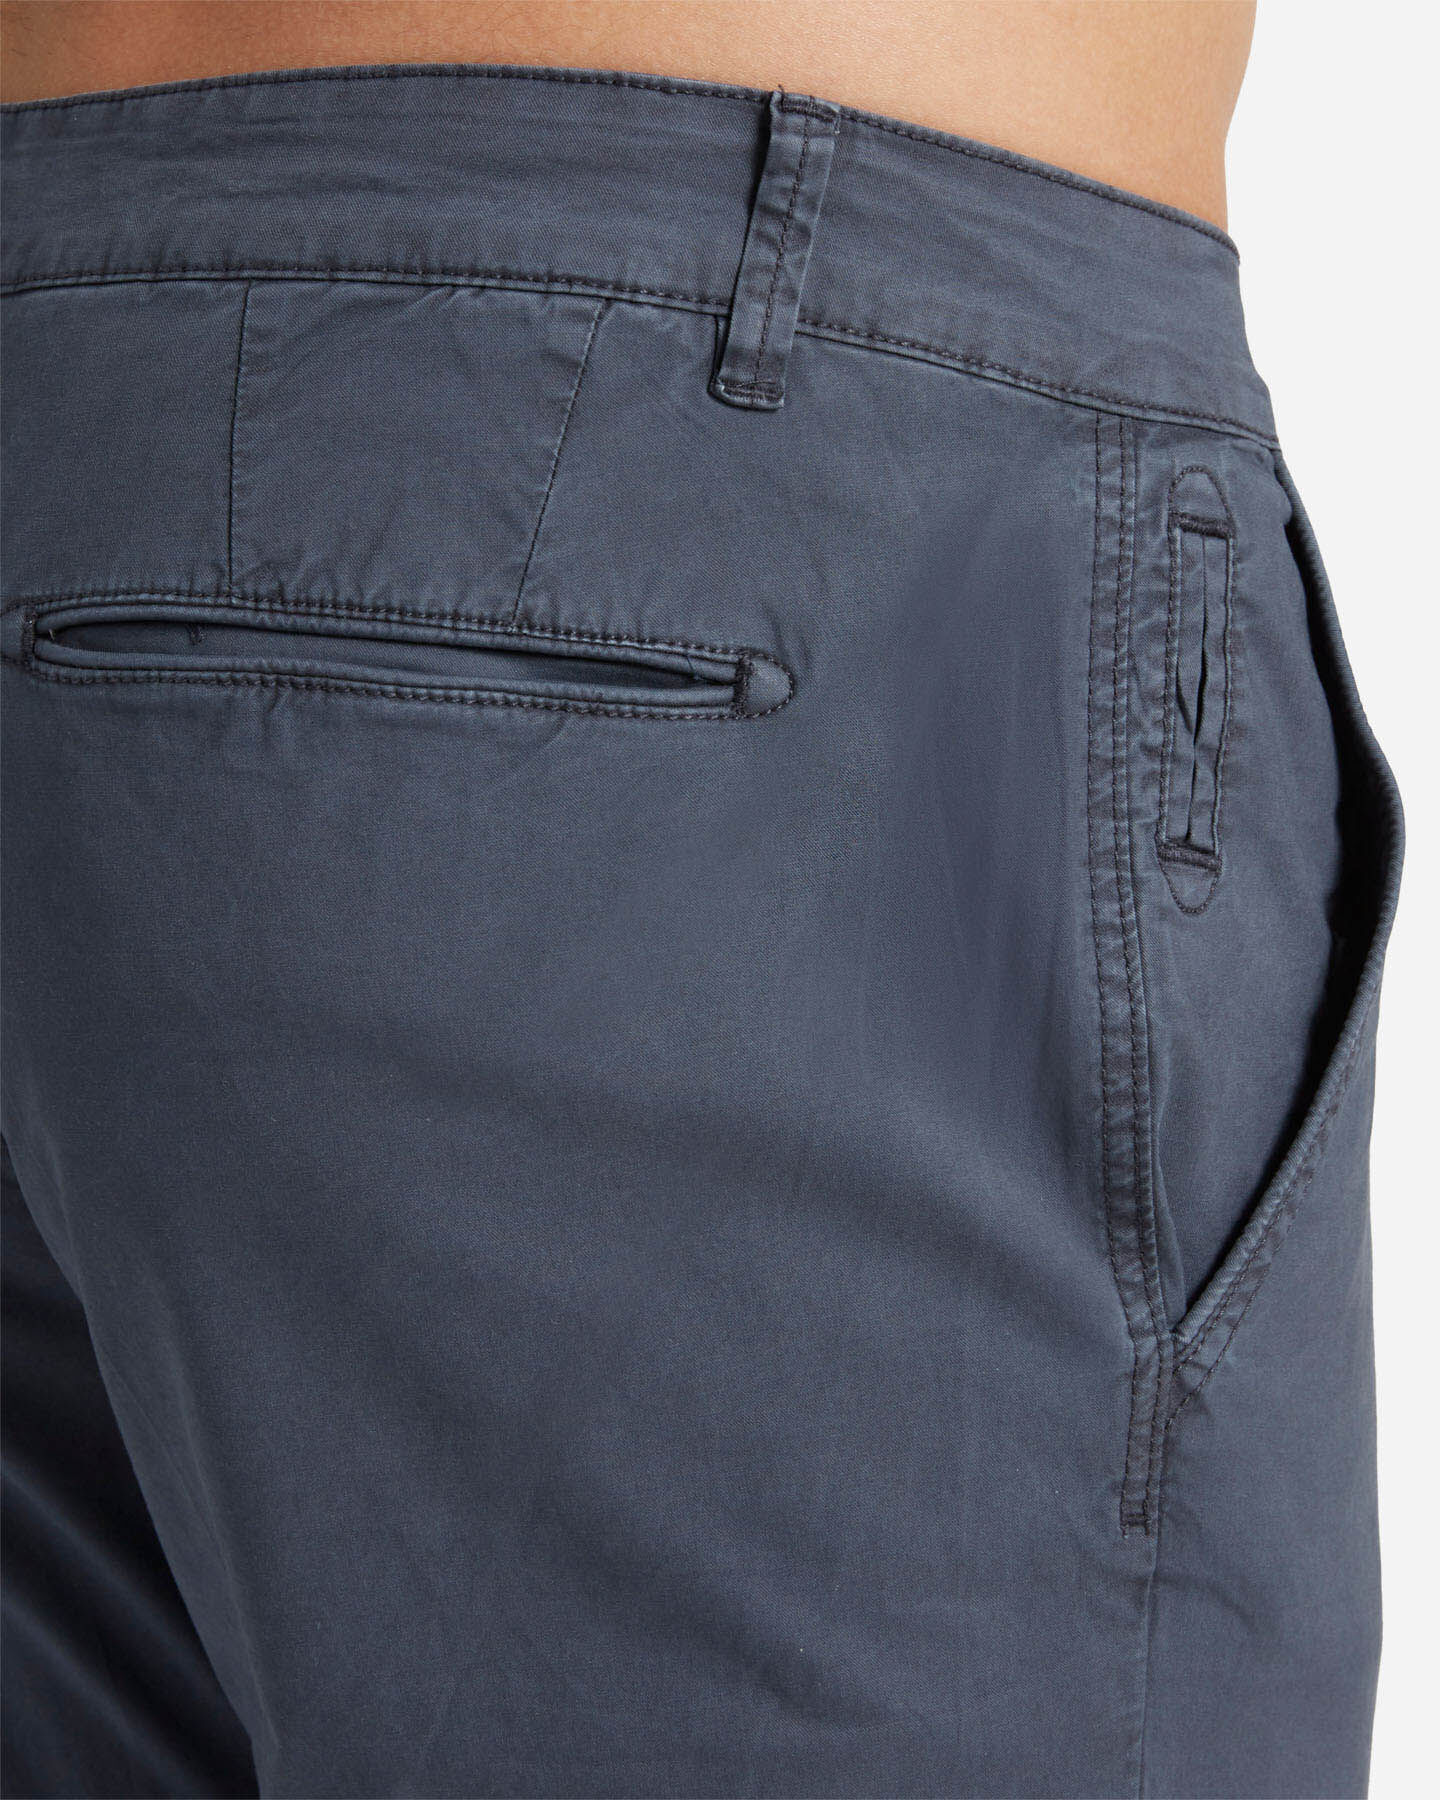  Pantalone BEST COMPANY COTTON LINE M S4131668|519|44 scatto 3